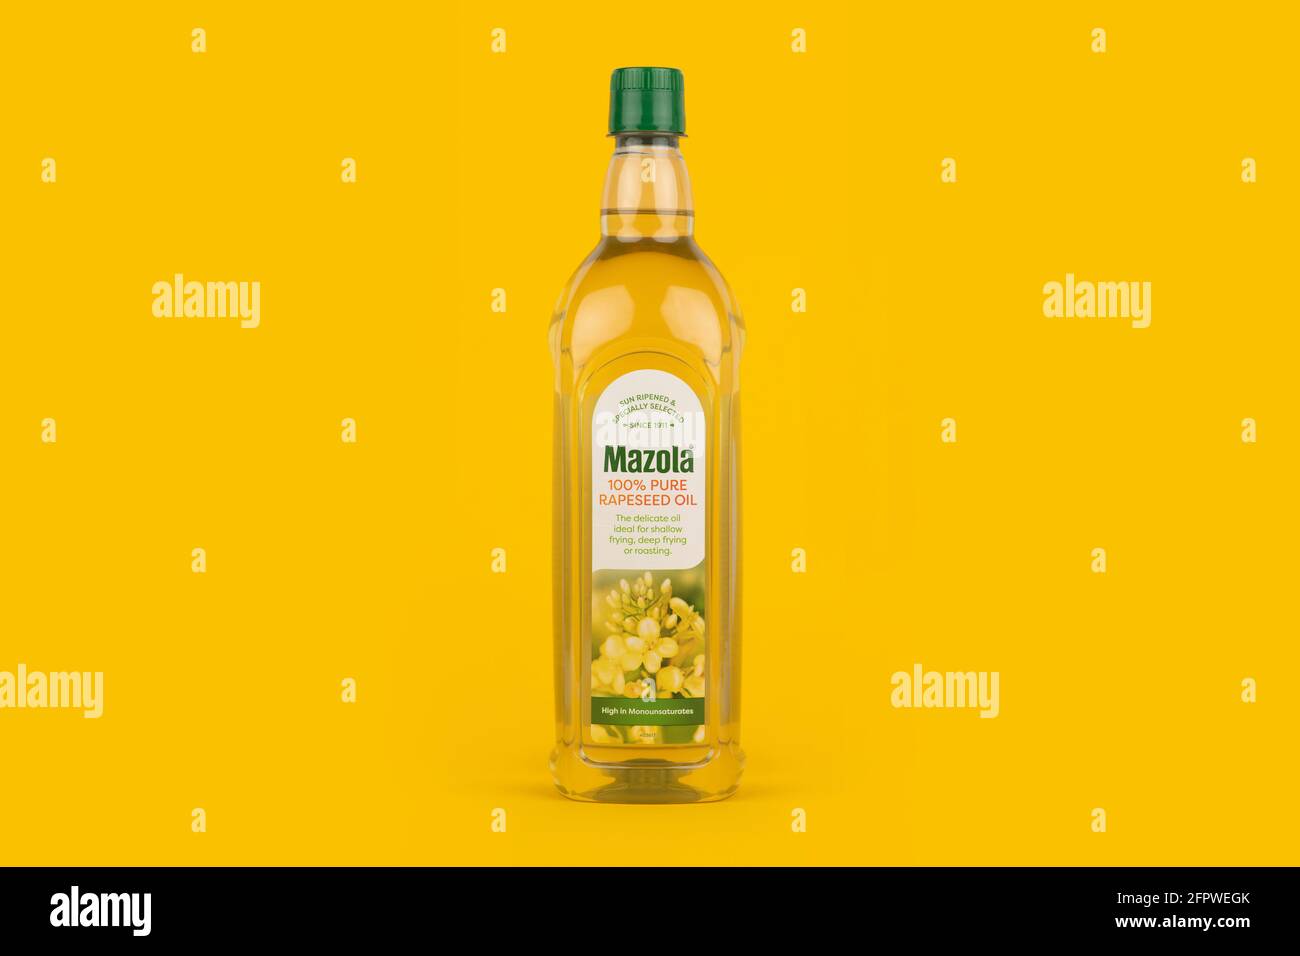 Une bouteille d'huile de colza pure Mazola 100 sur fond jaune. Banque D'Images